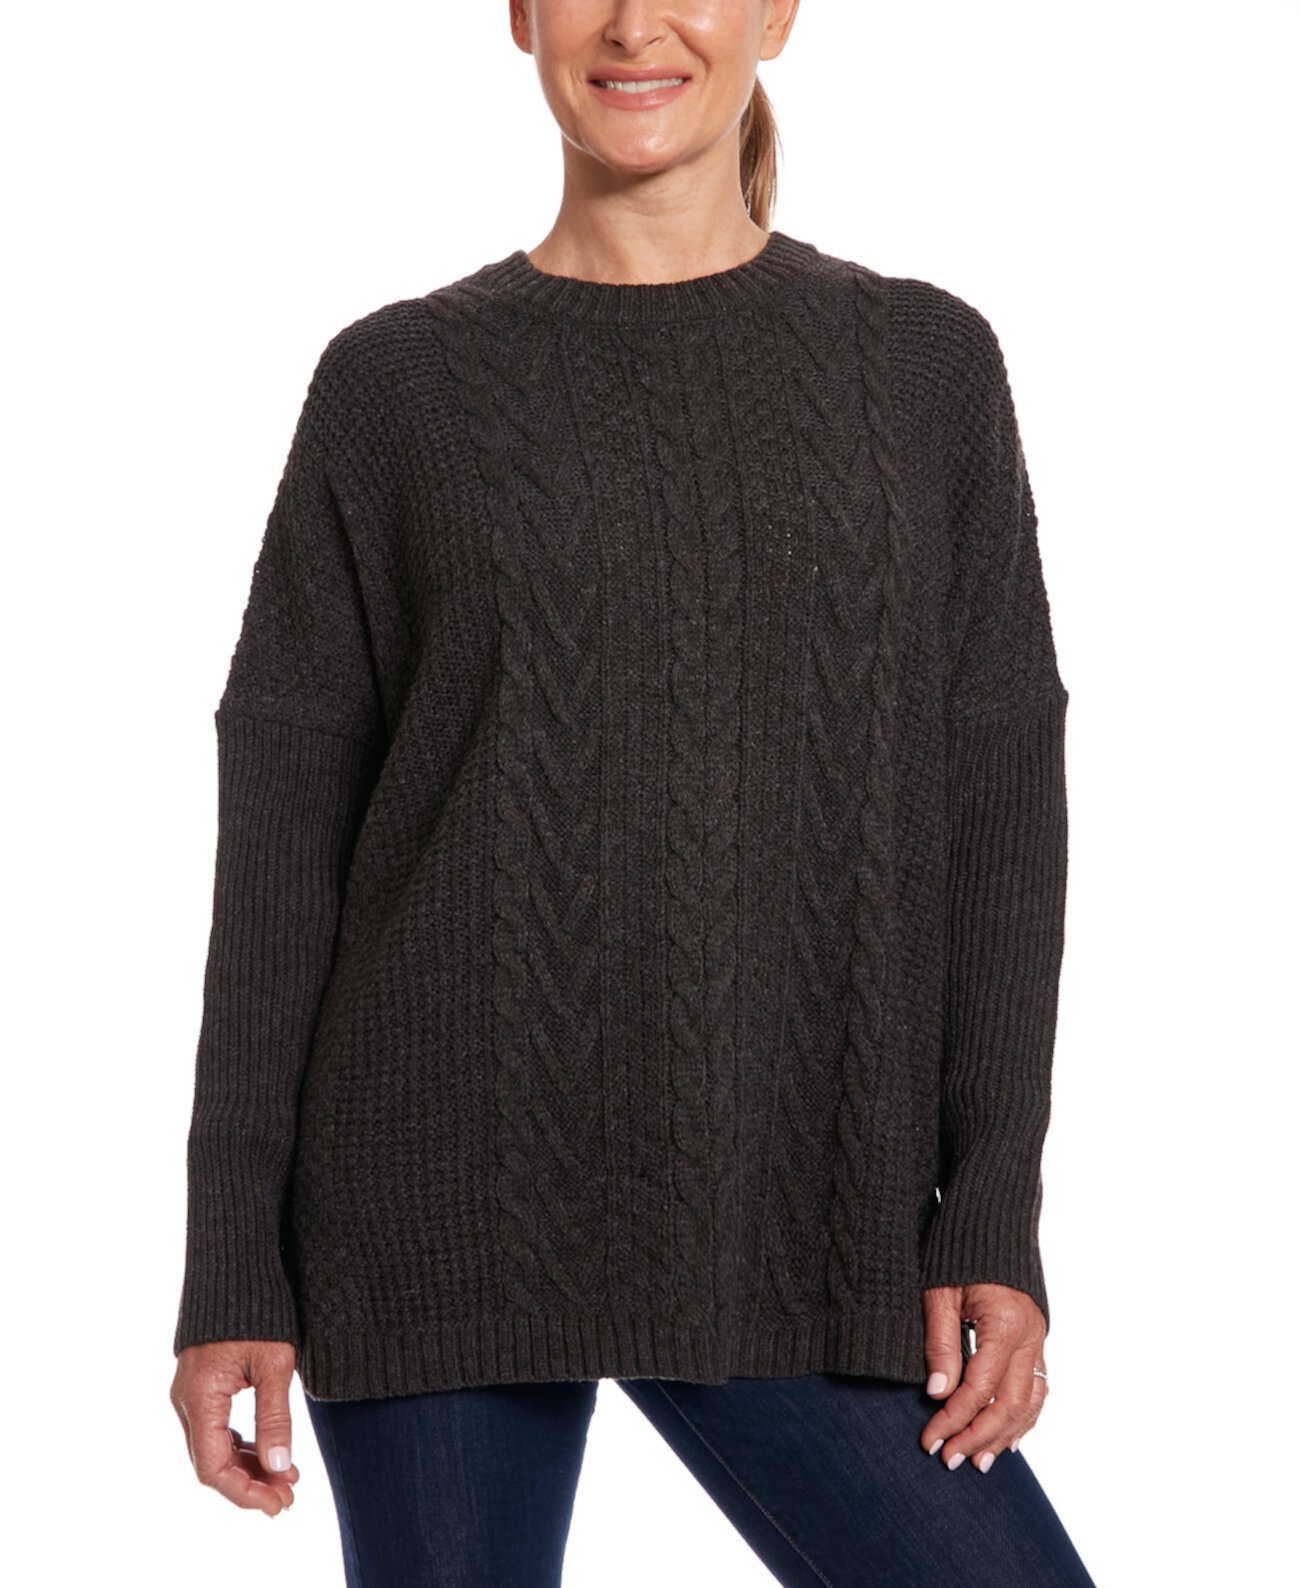 Женский пуловер с длинными рукавами и клетчатой спинкой спереди JOSEPH A